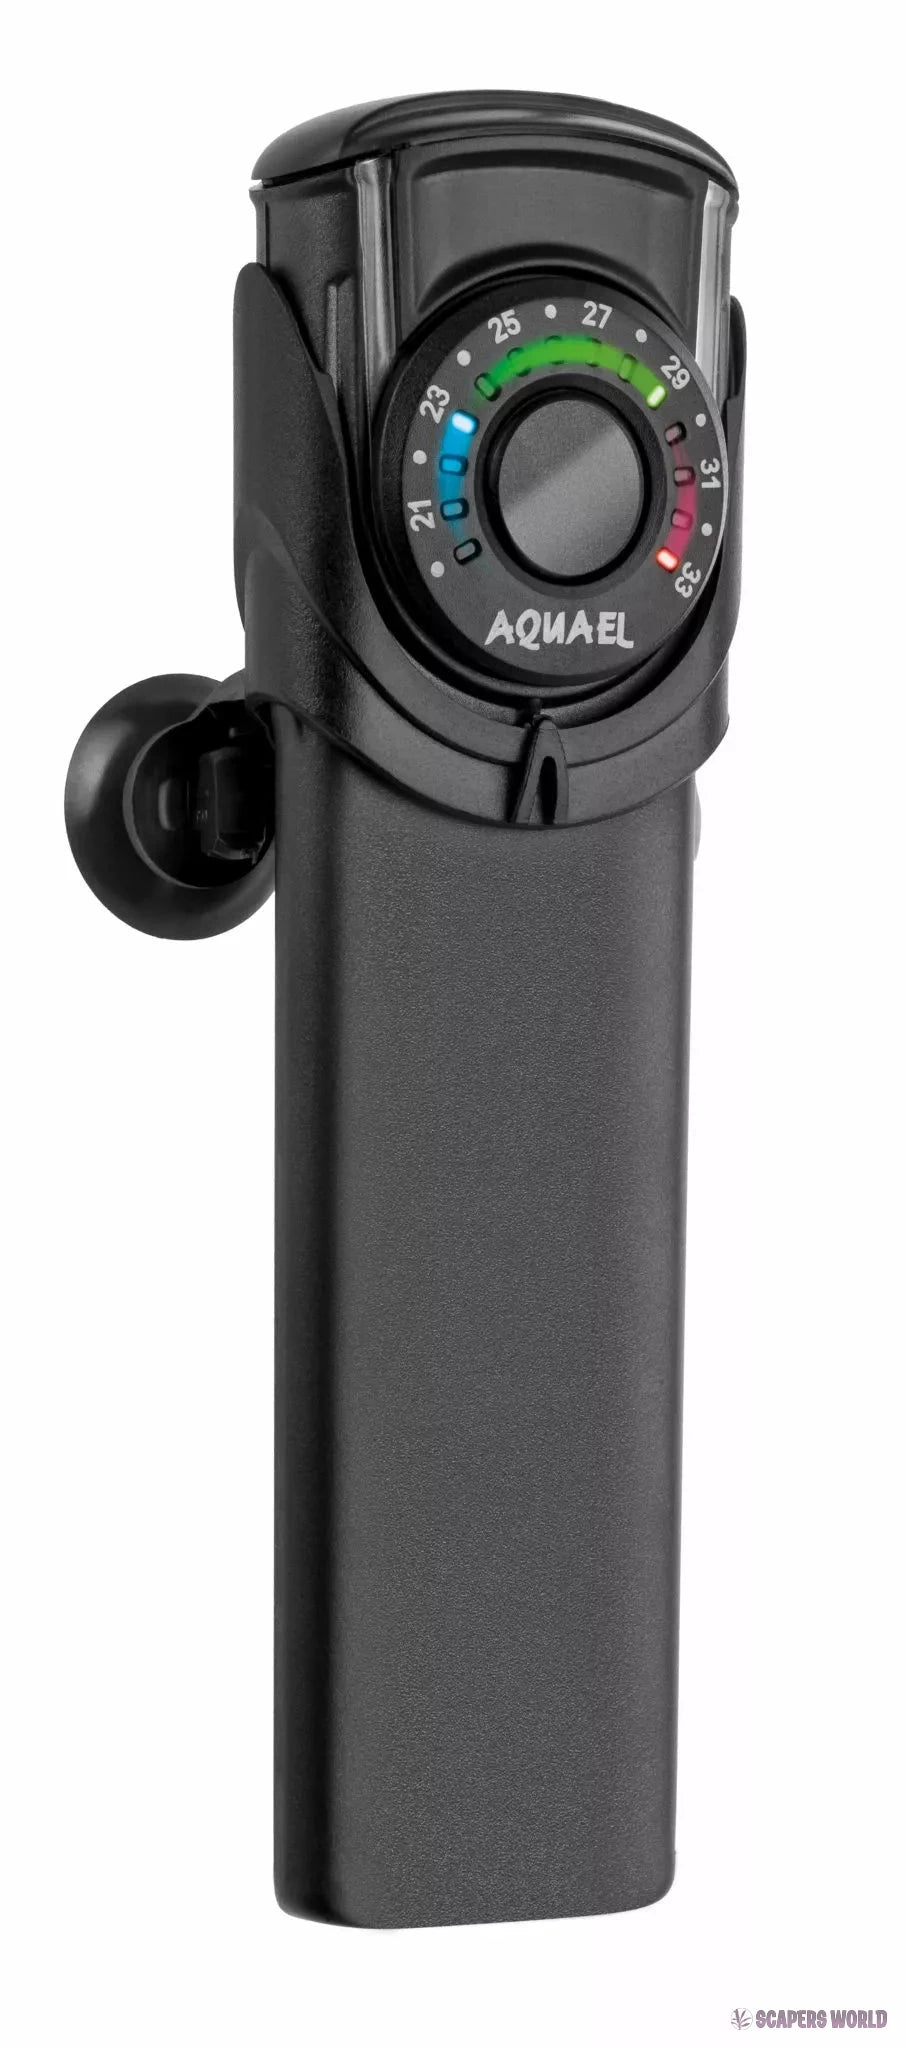 Aquael Ultra Heater